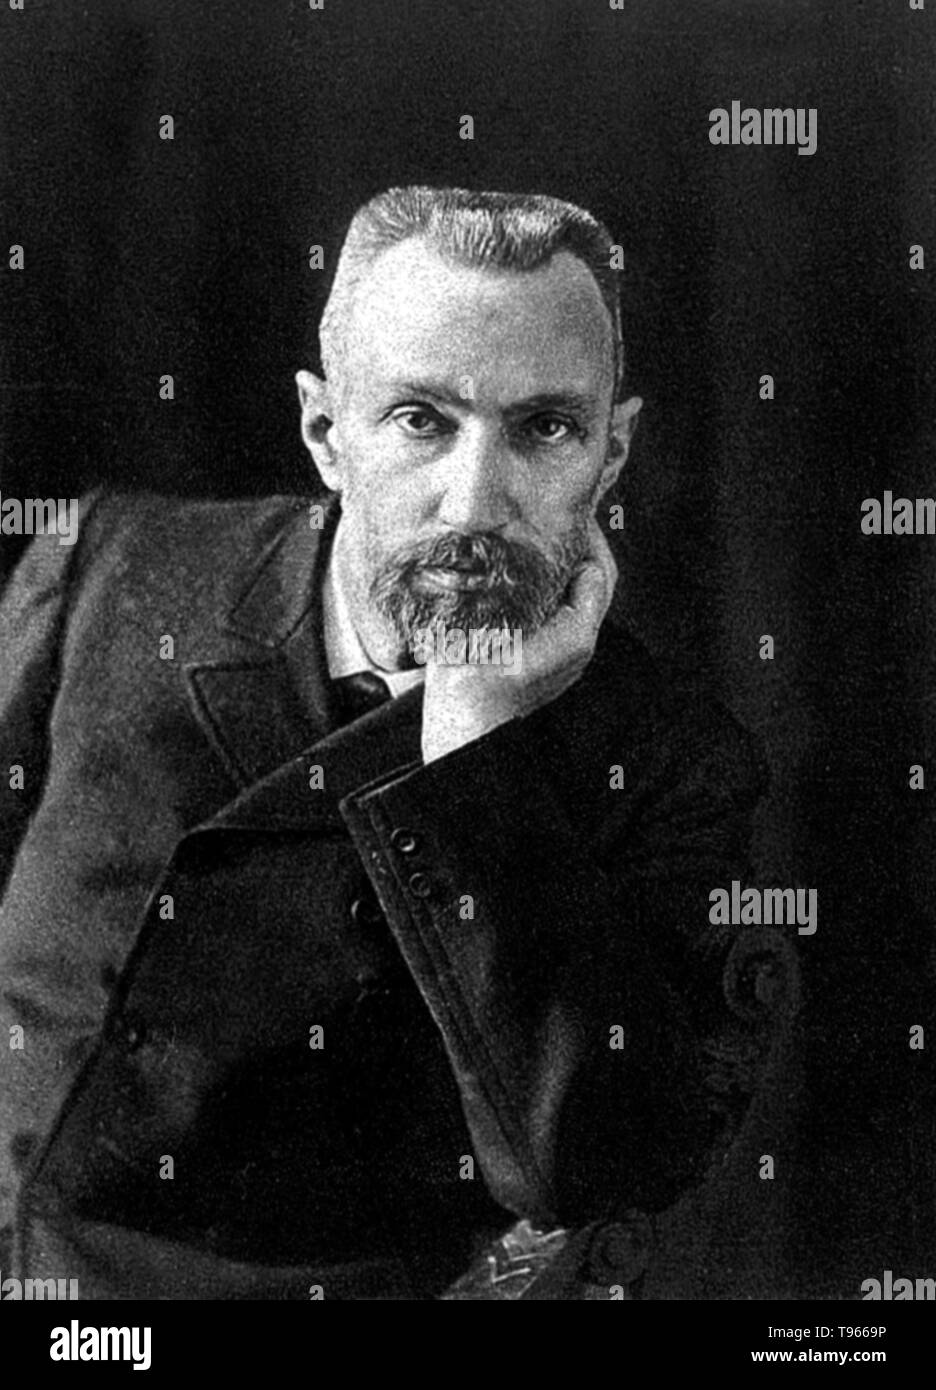 Pierre Curie (15. Mai 1859 - 19. April 1906)) war ein französischer Physiker, Nobelpreisträger, ein Pionier in der Kristallographie, Magnetismus, piezoelektrizität und Radioaktivität. Im Jahr 1903 erhielt er den Nobelpreis für Physik zusammen mit seiner Frau, Marie Sklodowska-Curie Salomea und Henri Becquerel. Er studierte Ferromagnetismus und diamagnetismus, paramagnetismus, für seine Doktorarbeit, und entdeckte die Wirkung der Temperatur auf paramagnetismus das jetzt als Curie's Gesetz bekannt. Stockfoto